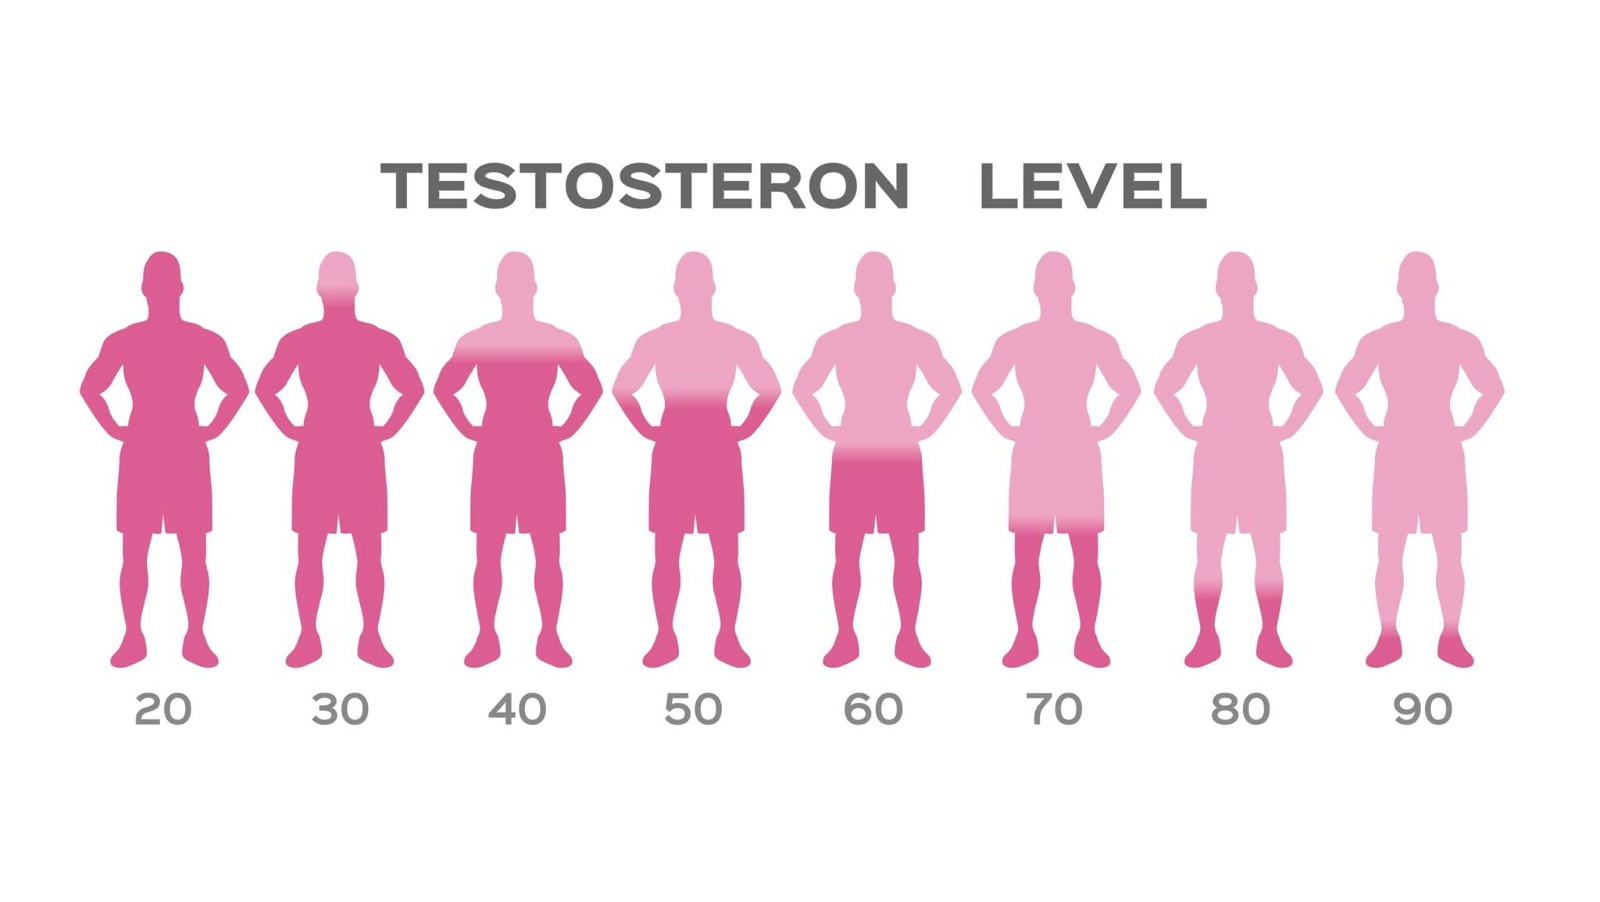 Mức độ testosteron giảm dần theo độ tuổi